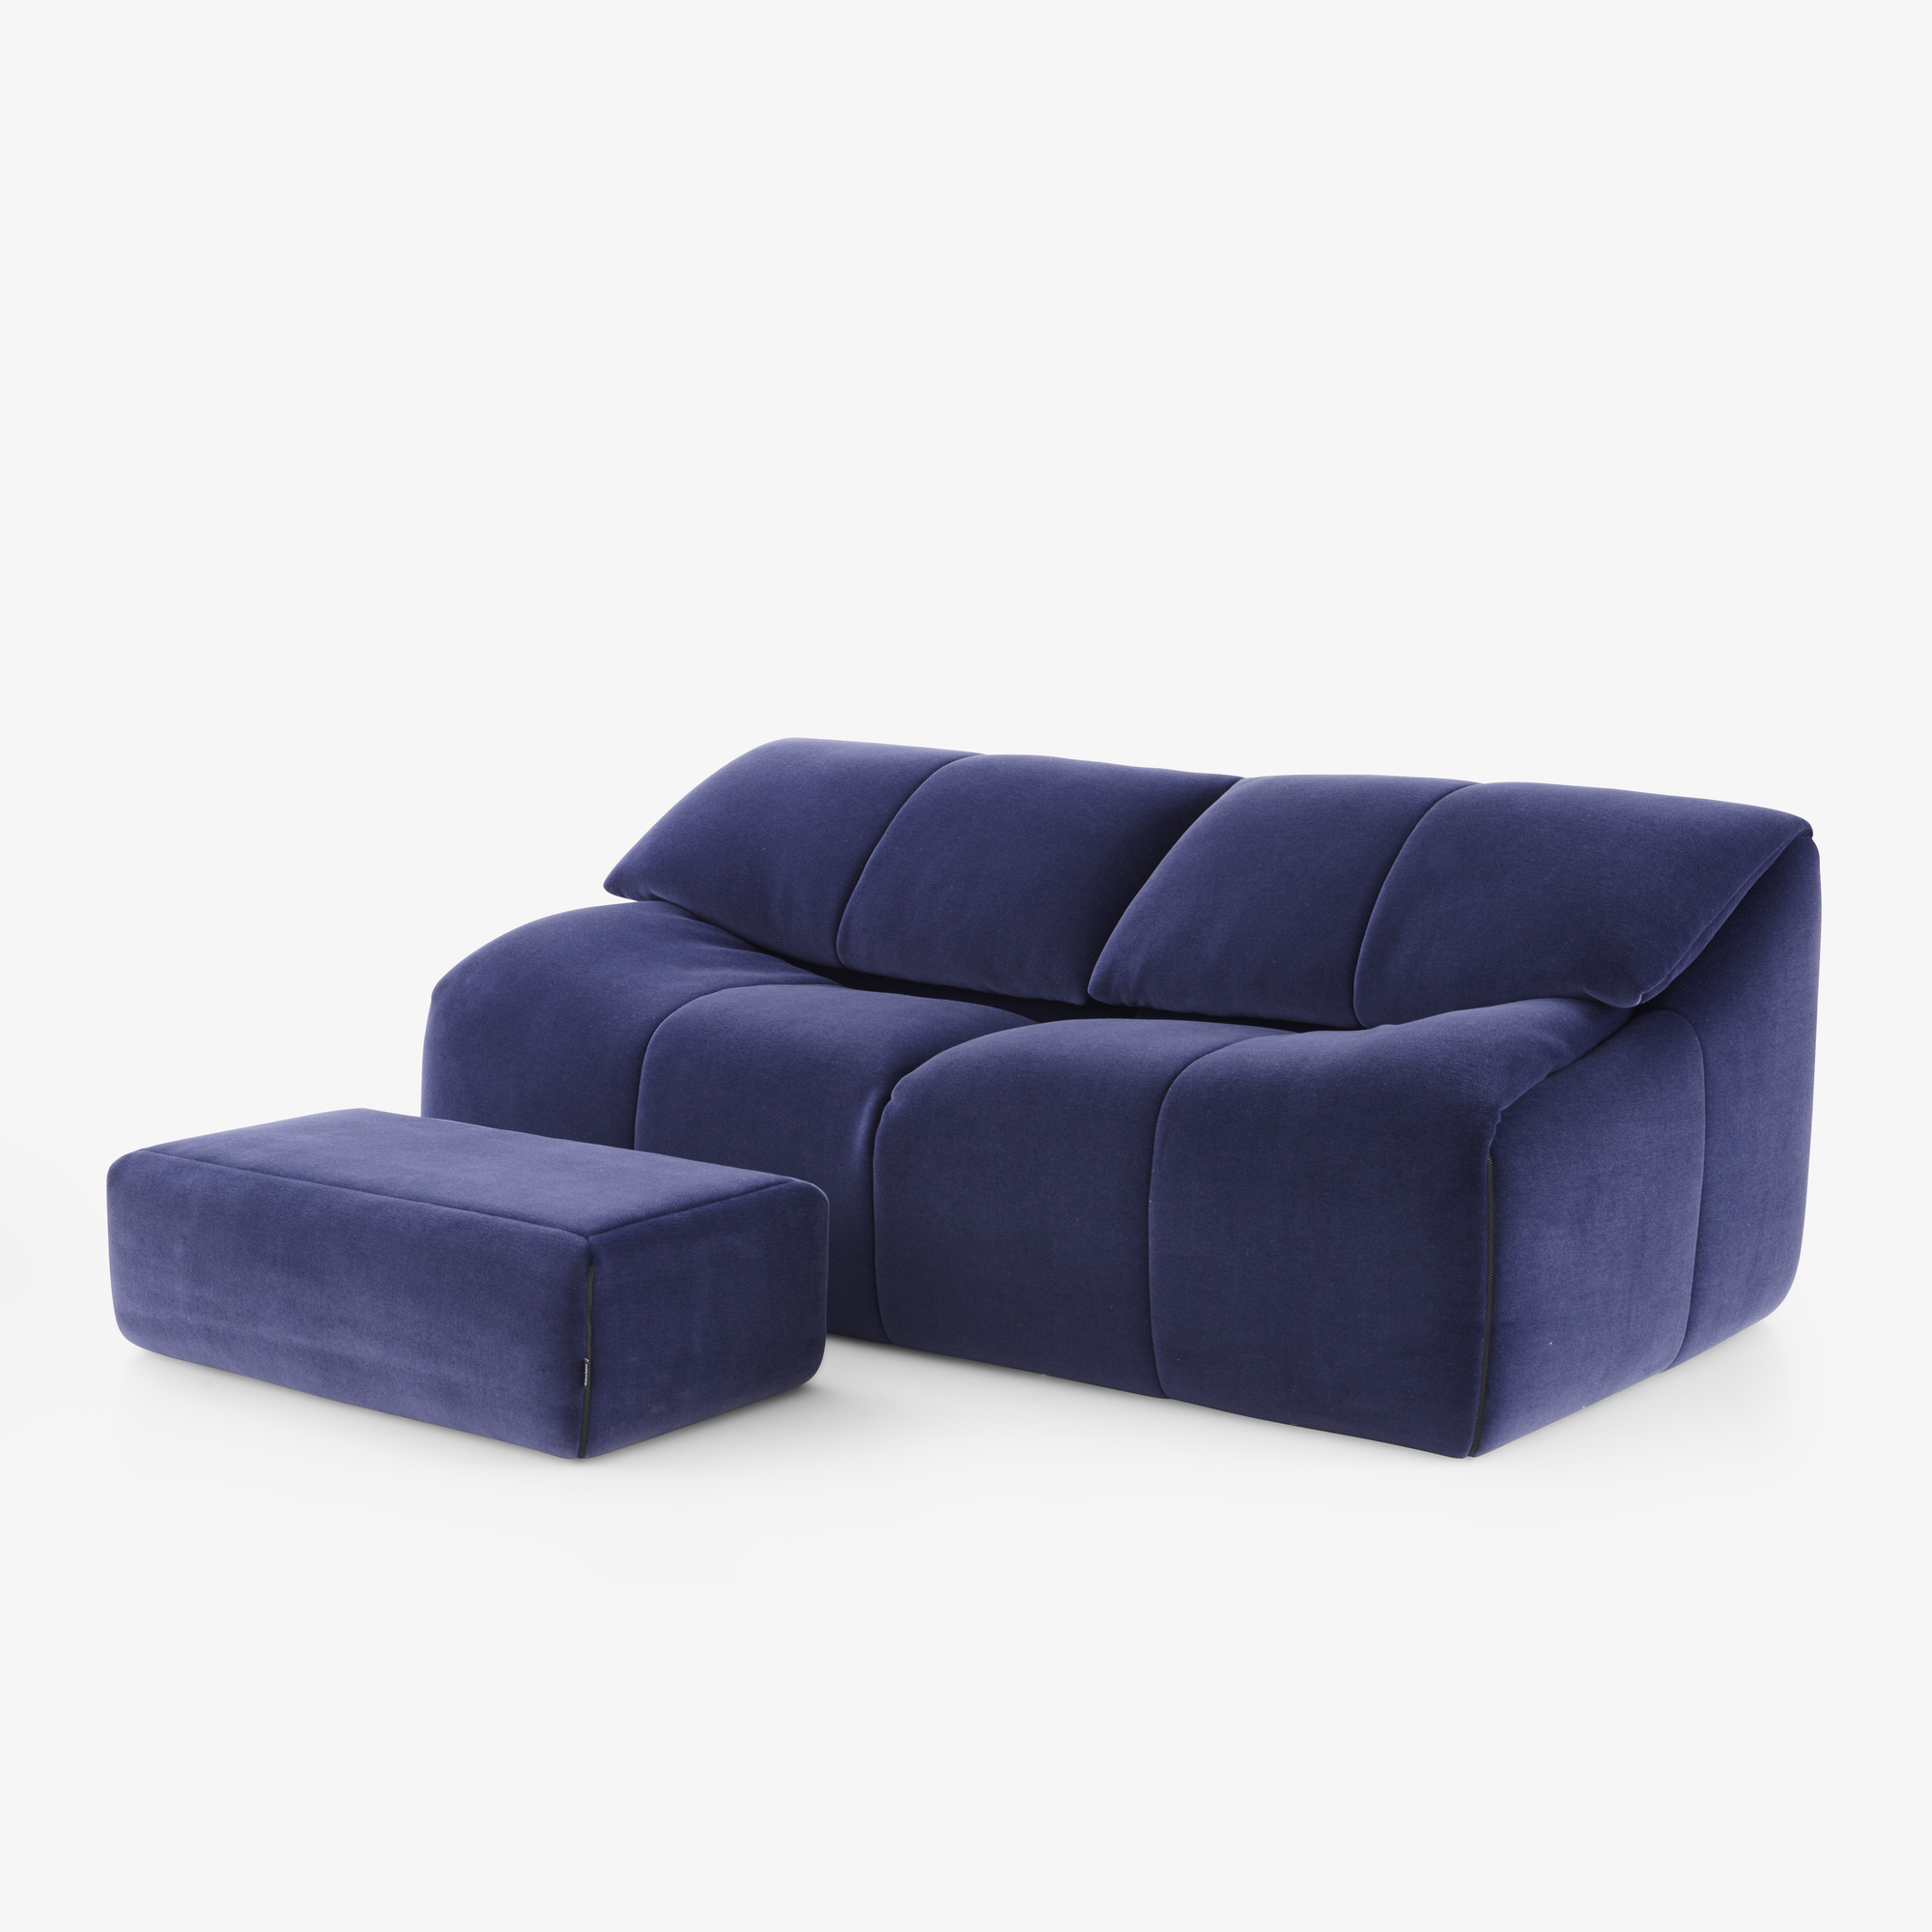 Image Medium sofa 3